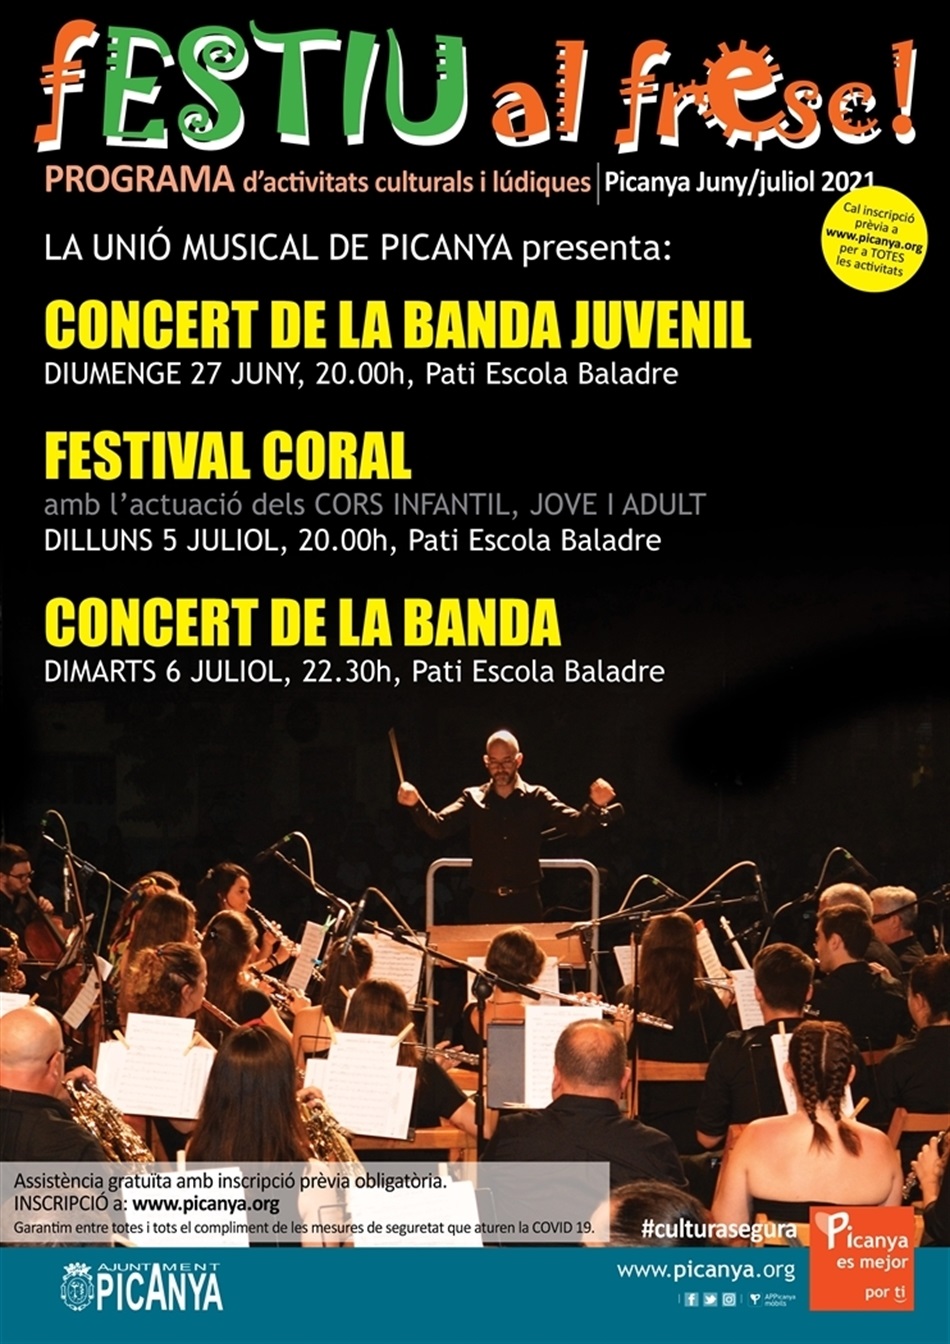 02_concert_banda_juvenil_cartell_festiu_al_fresc